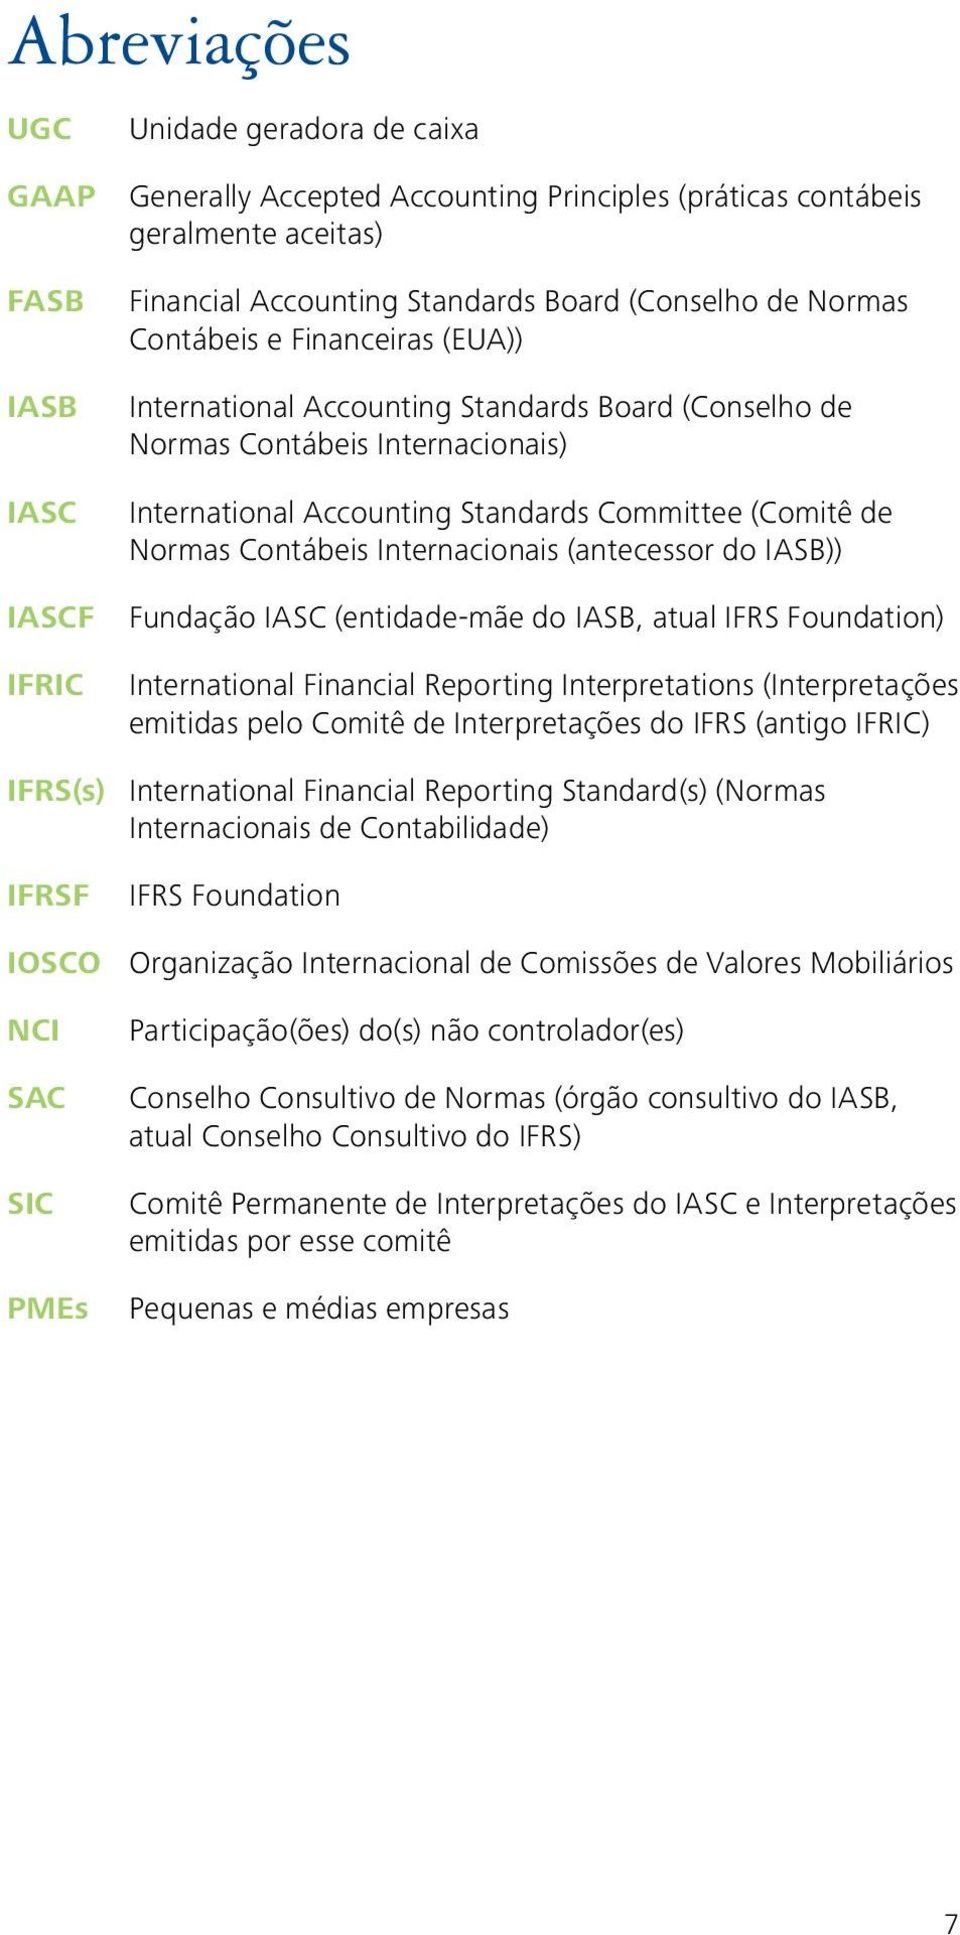 Normas Contábeis Internacionais (antecessor do IASB)) Fundação IASC (entidade-mãe do IASB, atual IFRS Foundation) International Financial Reporting Interpretations (Interpretações emitidas pelo